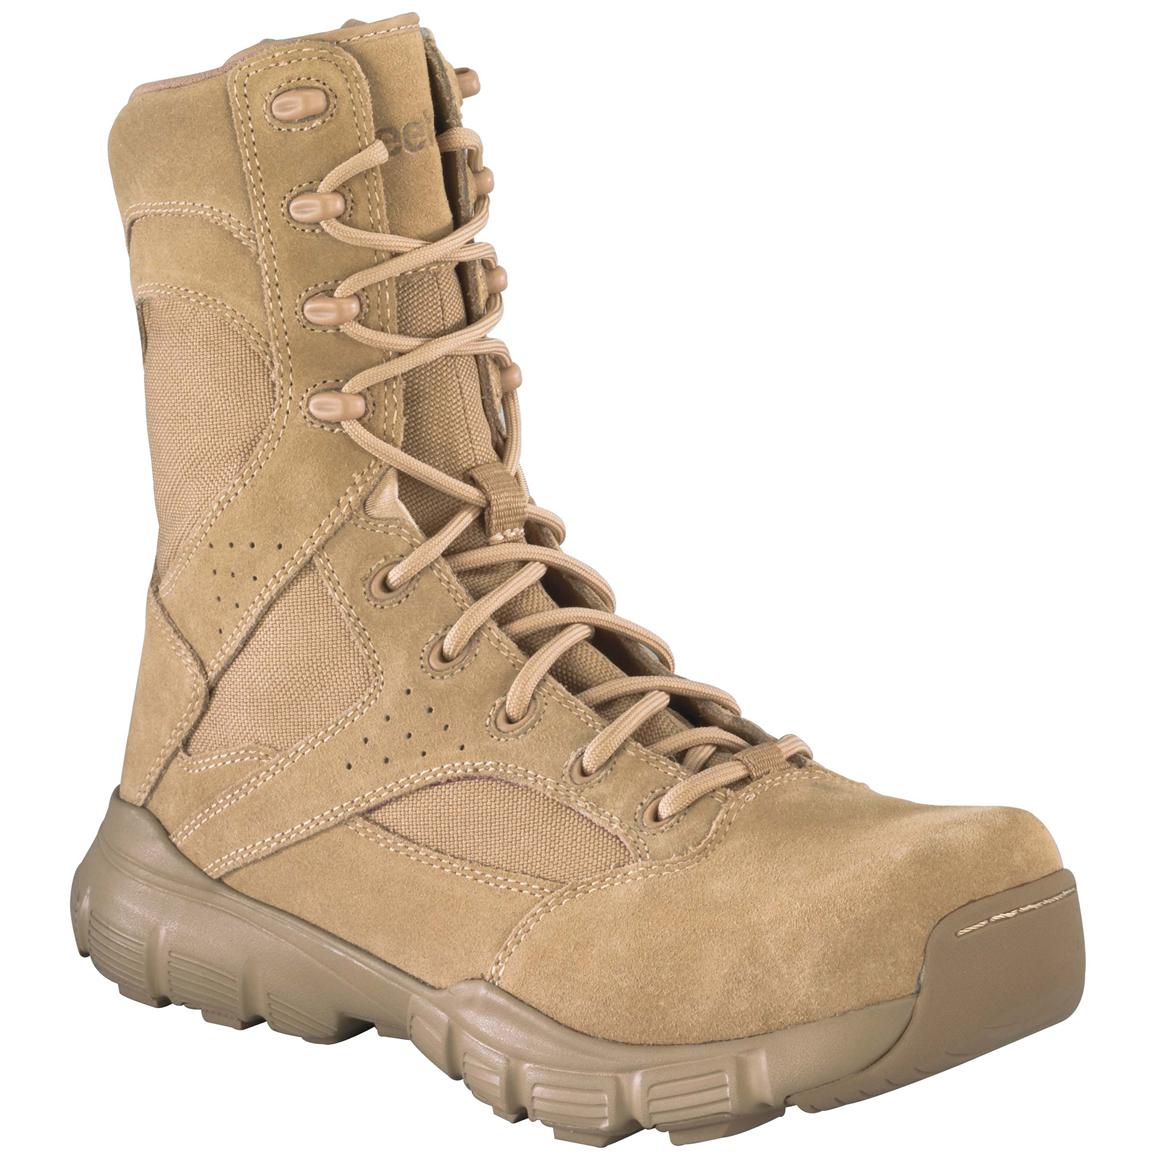 Reebok Men's 8" Dauntless Composite Toe Side-Zip Tactical Boots, Desert Tan